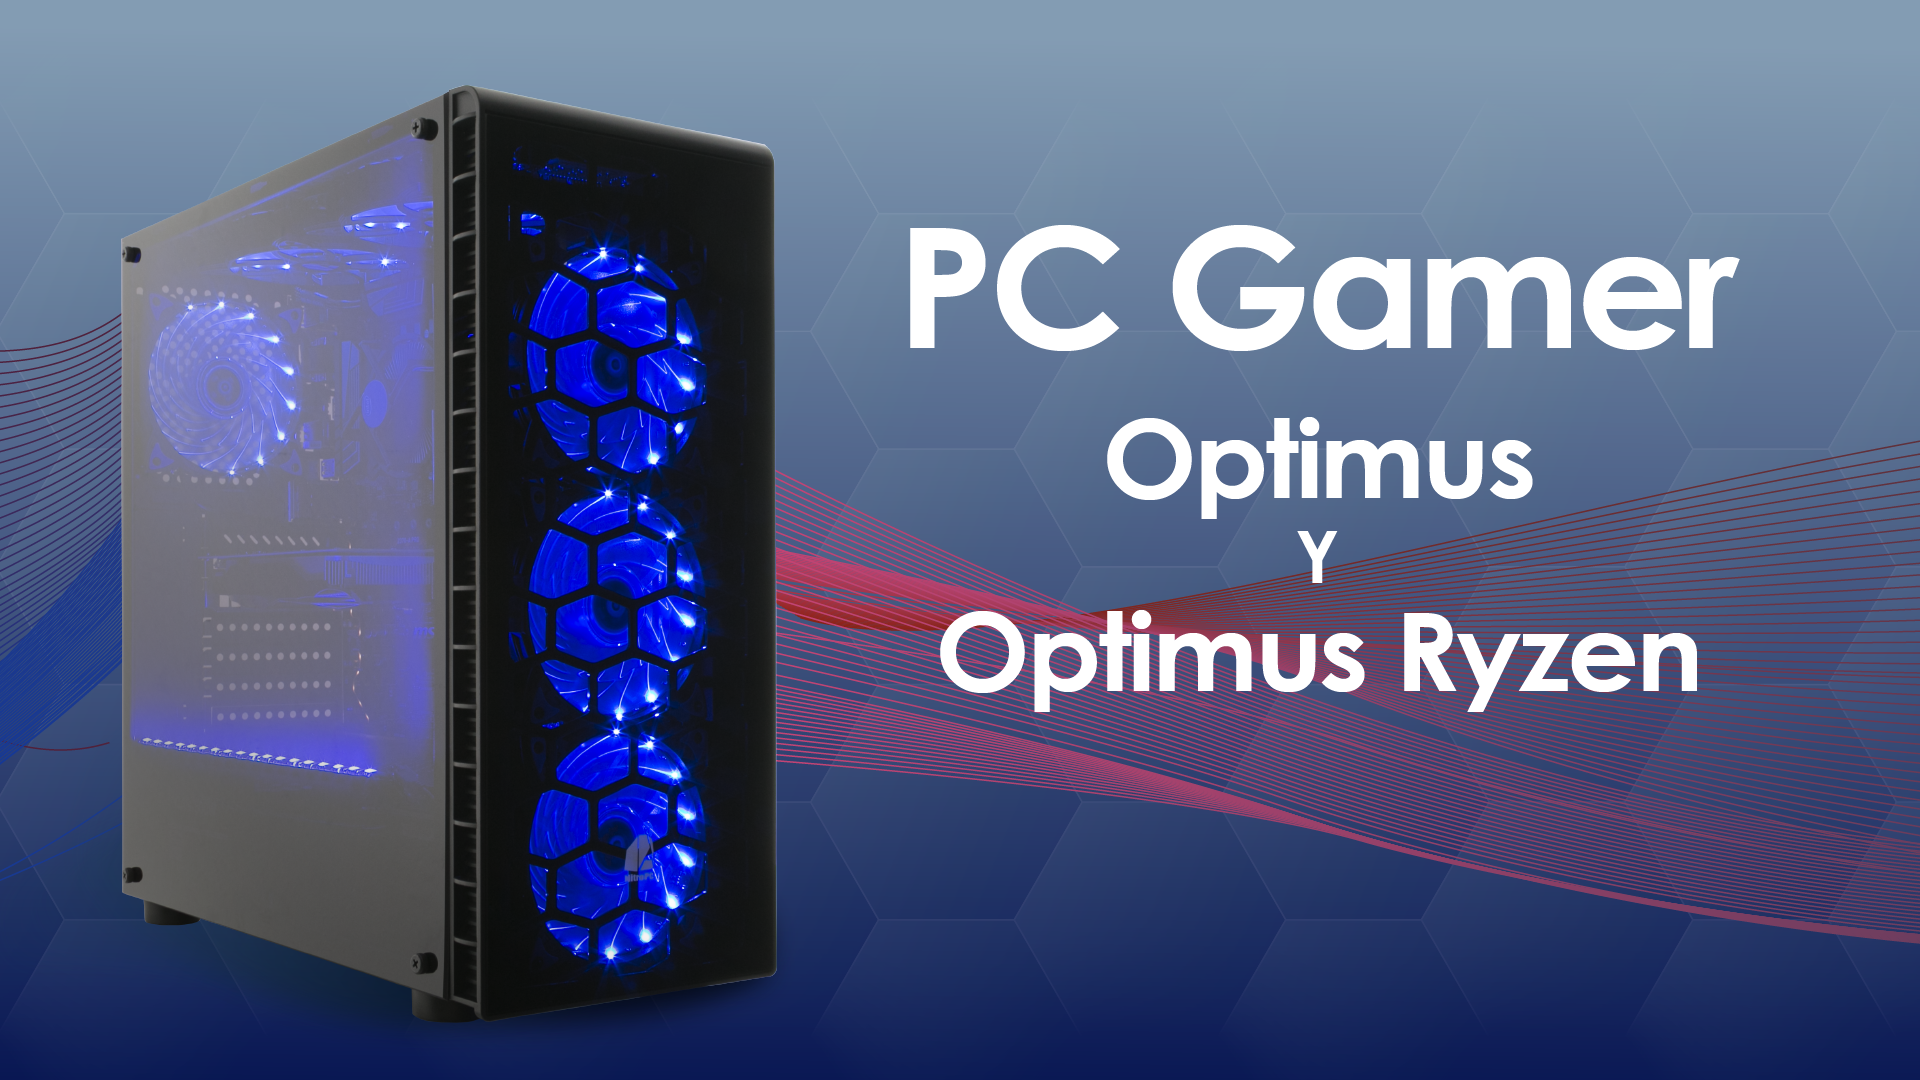 PC Gamer Optimus y Optimus Ryzen